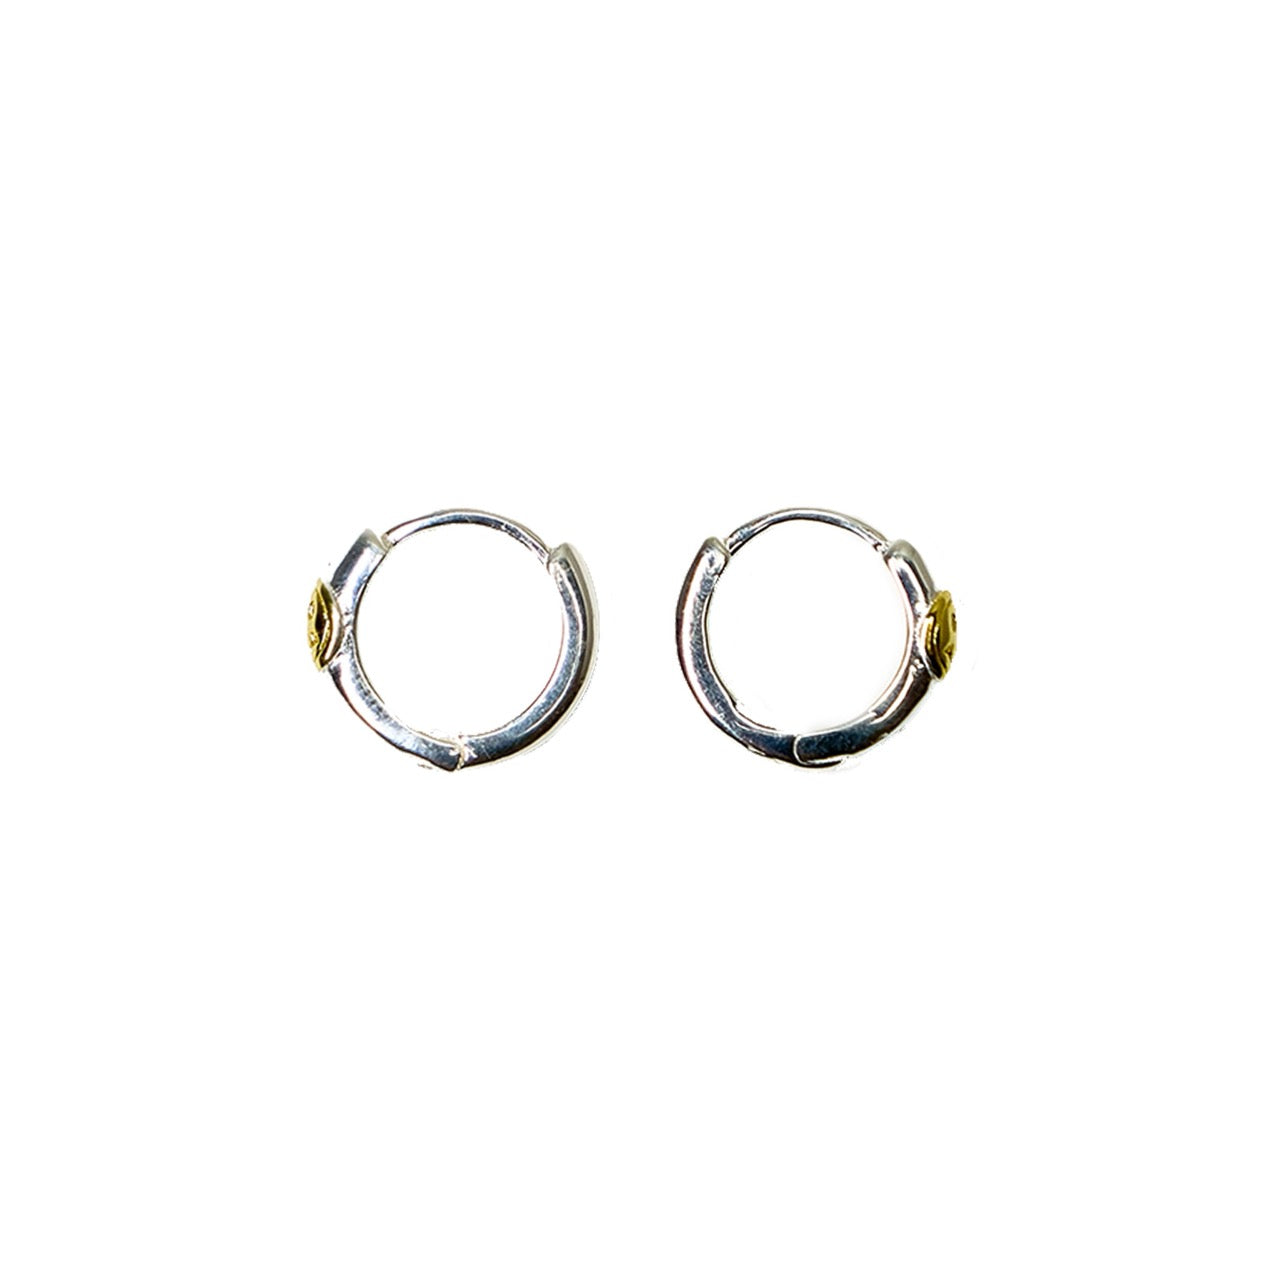 Smiley Hoop Earrings in Sterling Silver